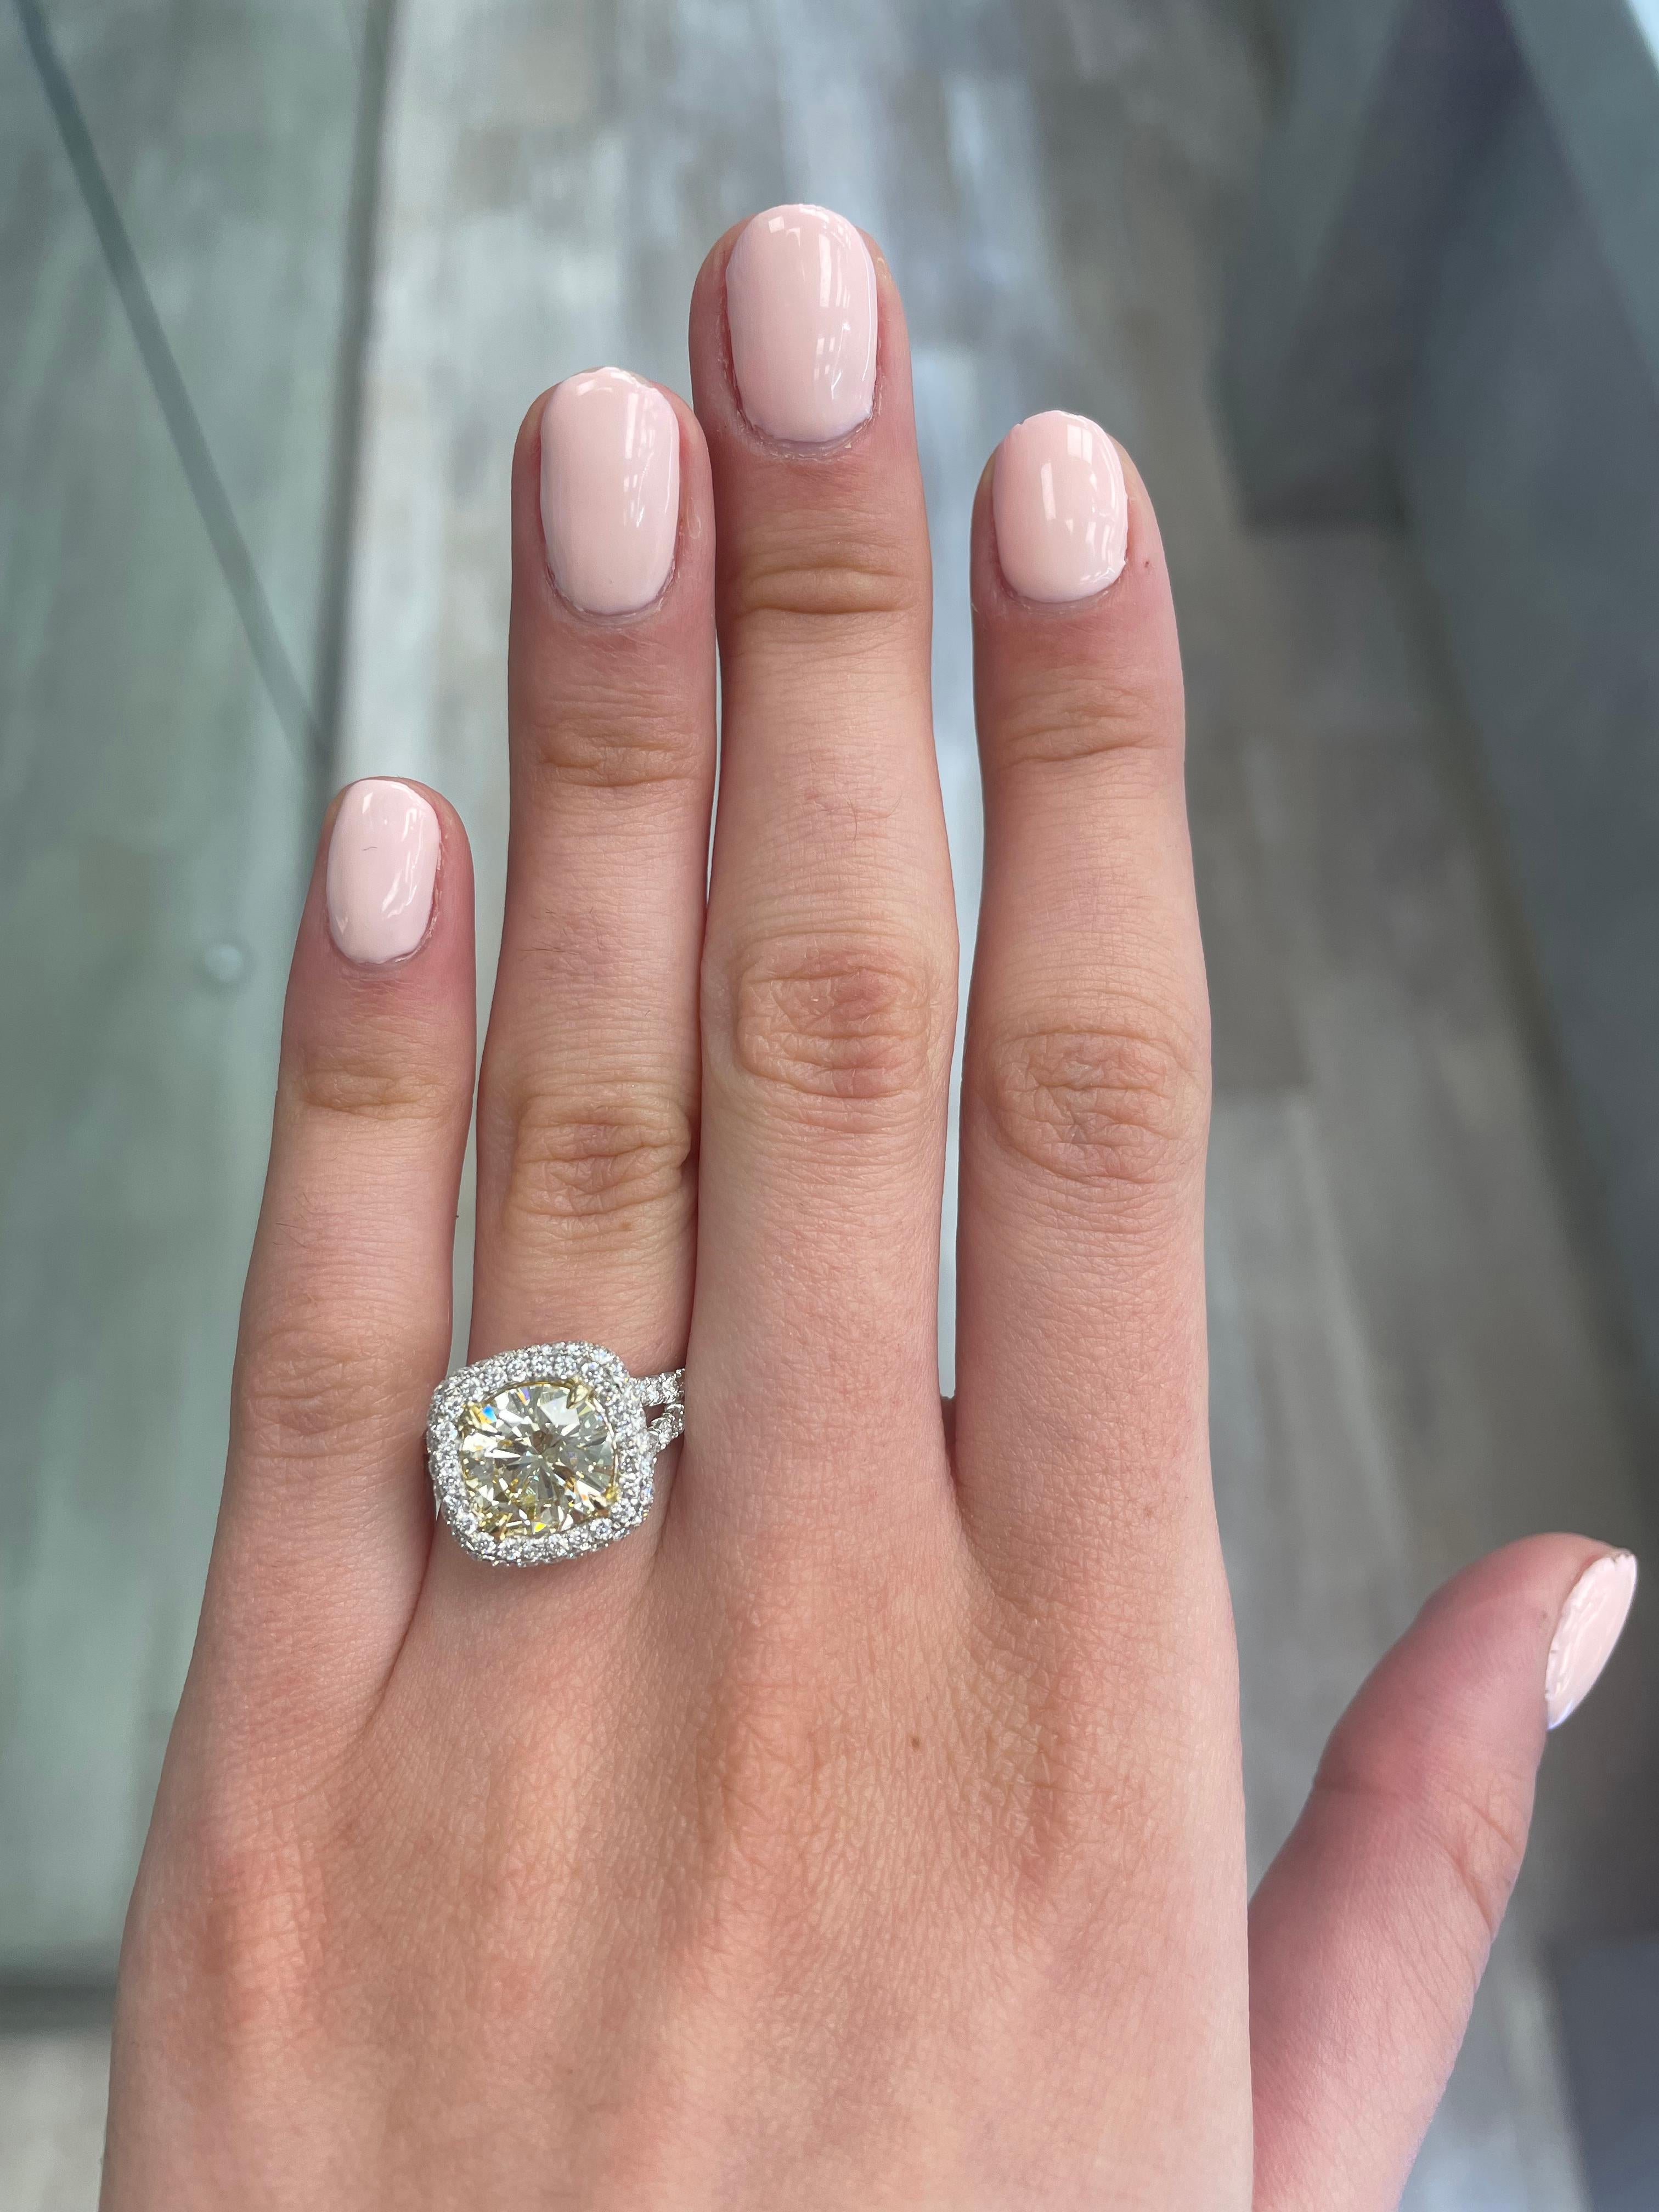 Atemberaubender moderner EGL-zertifizierter gelber Diamant mit Halo-Ring, zweifarbiges 18k Gelb- und Weißgold, geteilter Schaft. Von Alexander Beverly Hills
3,37 Karat Gesamtgewicht der Diamanten.
2,63 Karat rund geschliffener Diamant von hellgelber